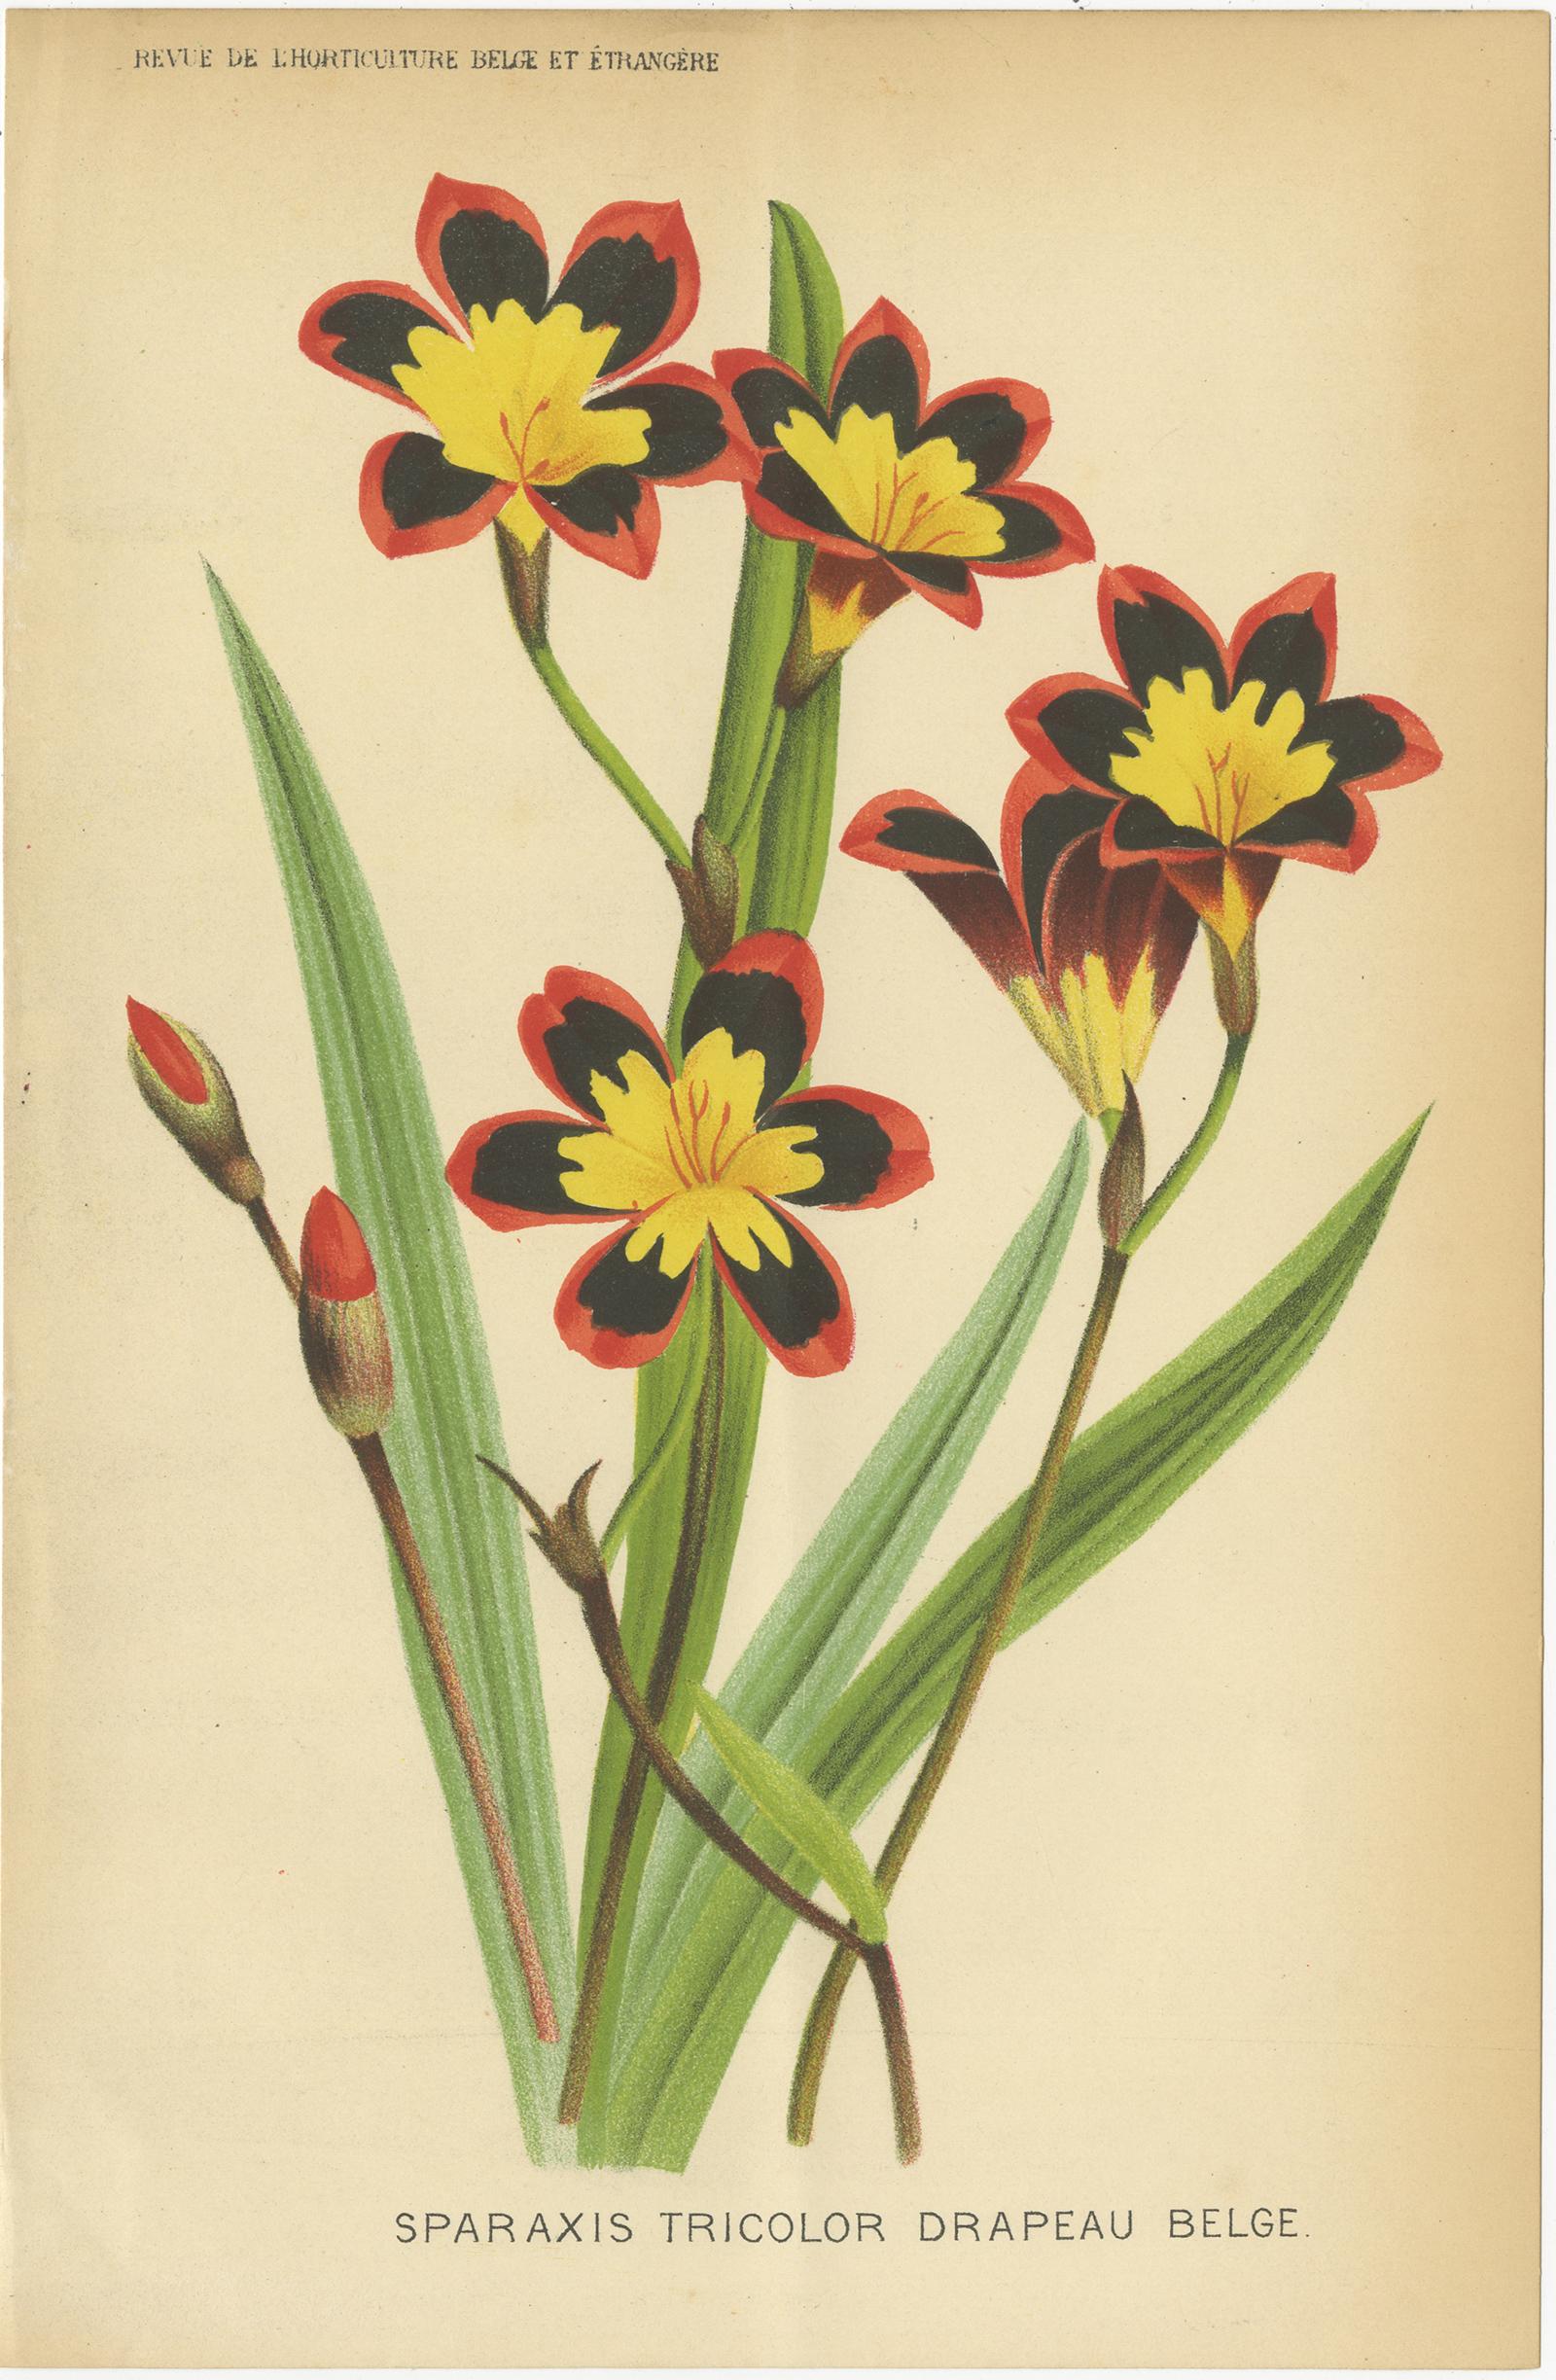 Satz von drei antiken botanischen Drucken mit dem Titel 'Sparaxis Tricolor Drapeau Belge - Coleus le Progres - Nouvelles variétés d'Abutilon'. Es zeigt die Sparaxis tricolor (Harlekinblume), eine Coleus-Art und die Abutilon-Blütenpflanze. Diese